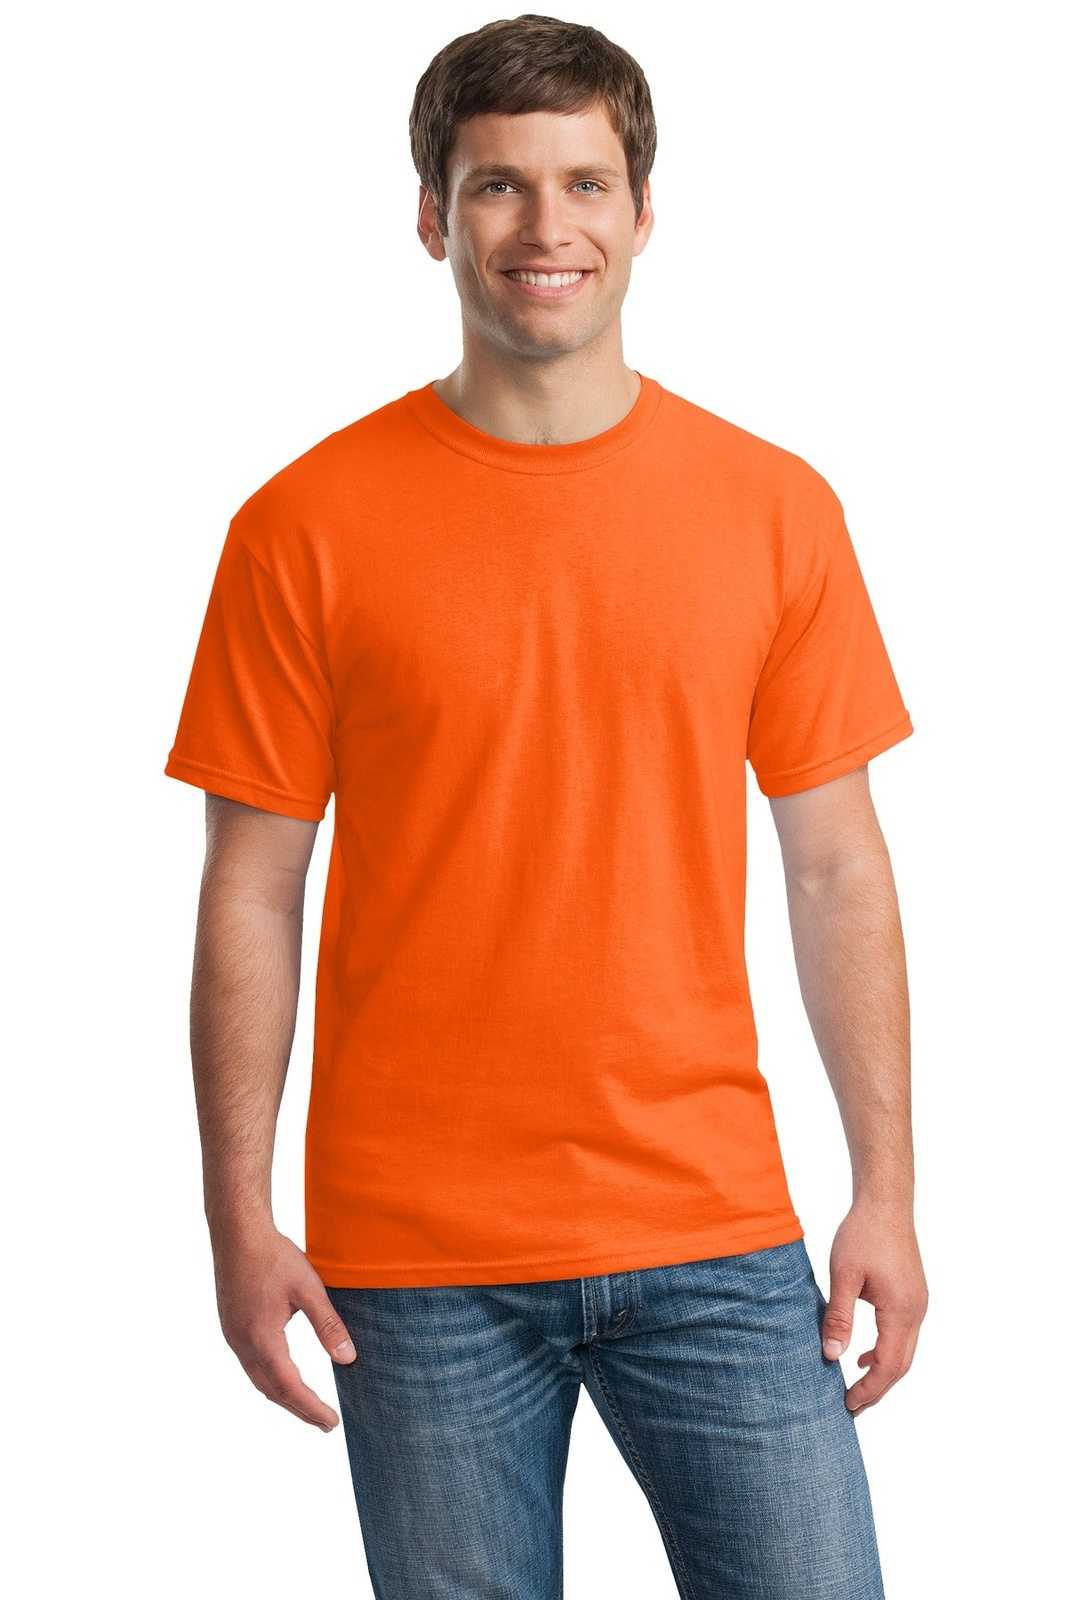 Gildan 5000 Heavy Cotton 100% Cotton T-Shirt - S. Orange - HIT a Double